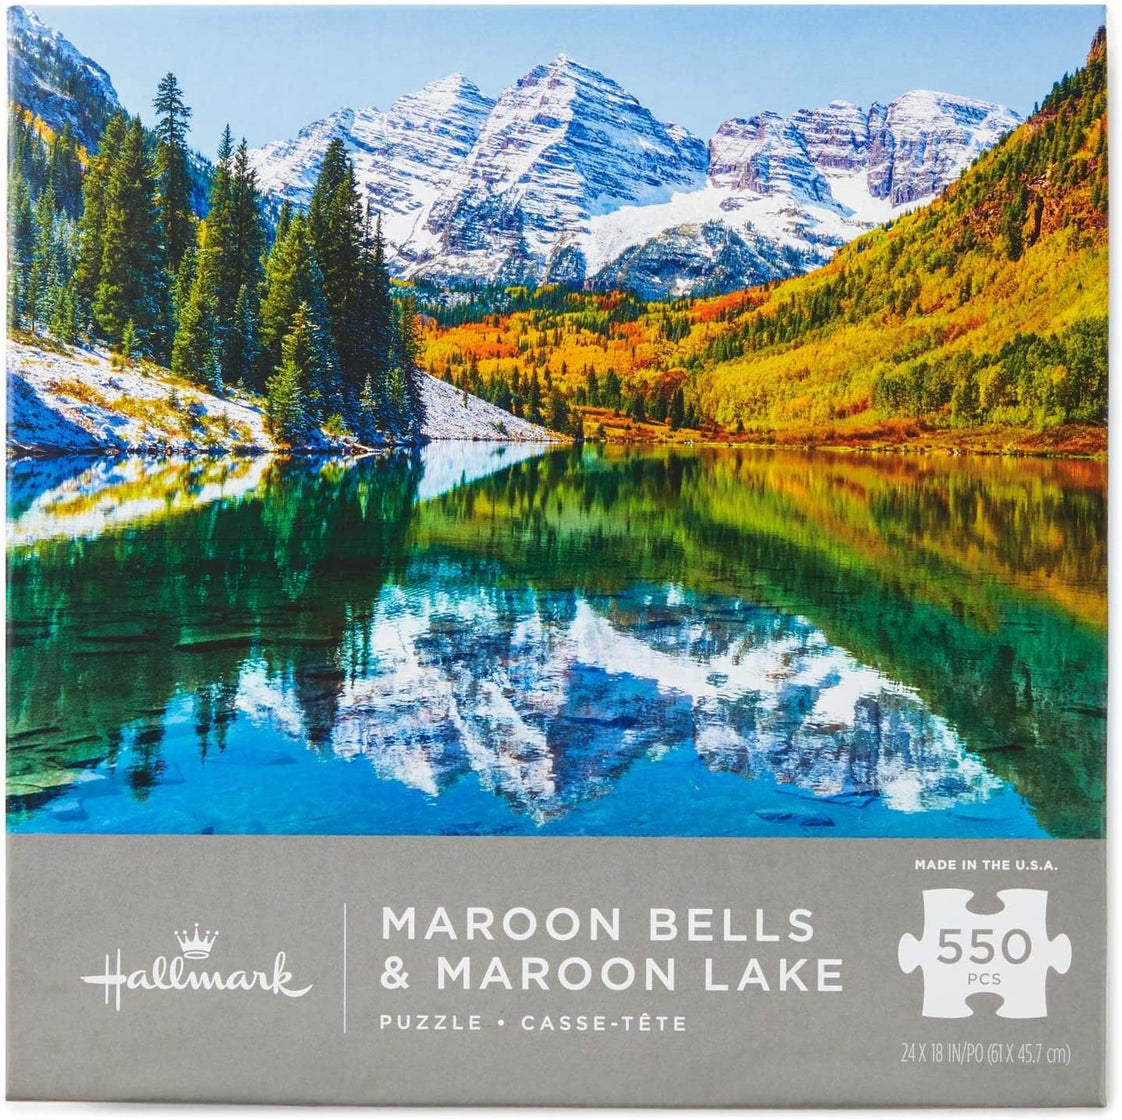 Maroon Bells & Maroon Lake